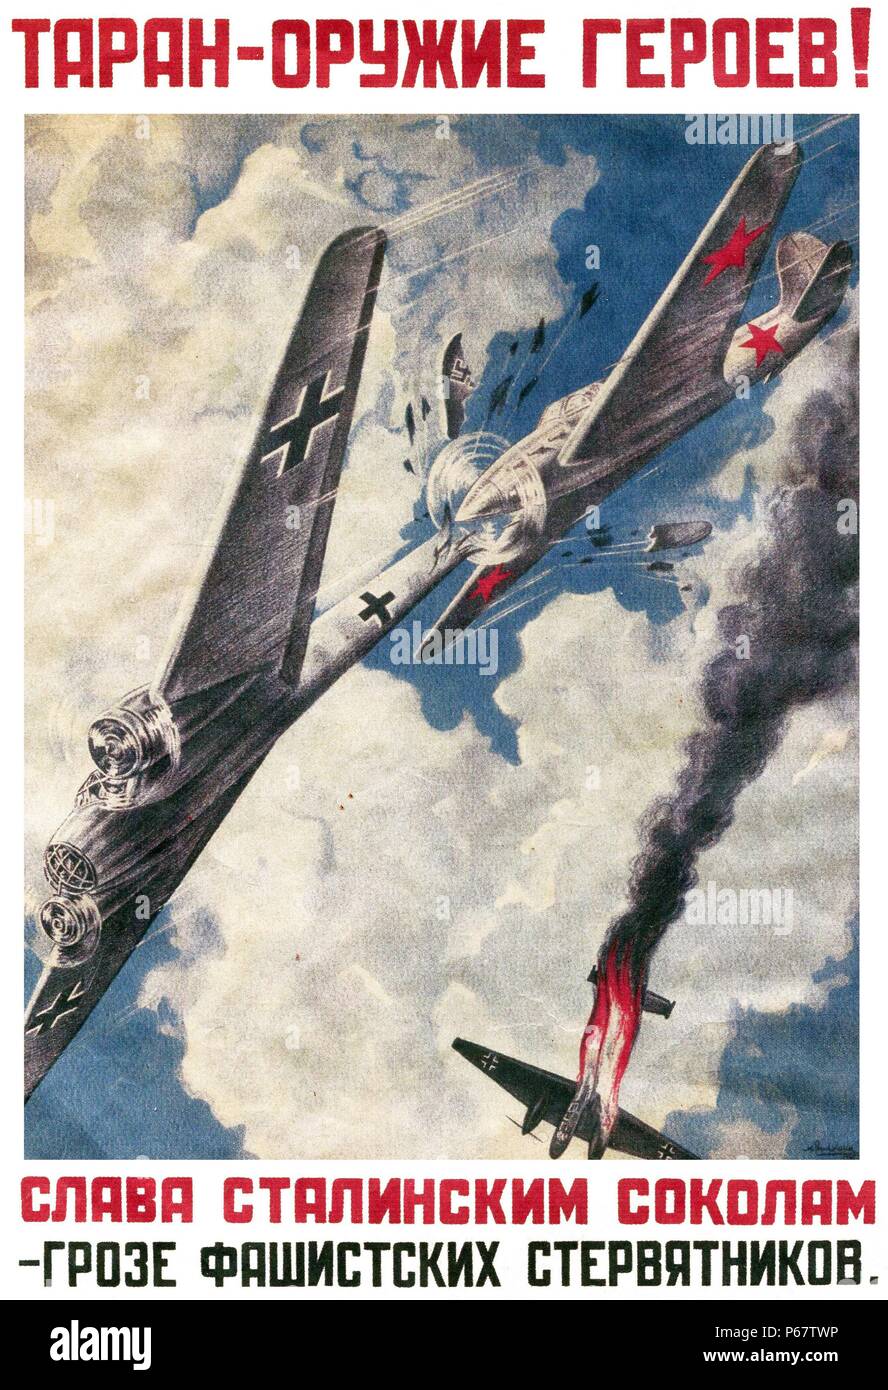 Russische Propaganda Poster aus dem Zweiten Weltkrieg. Text liest, 'RAM-Angriff - die Waffe der Helden!" und "Für die Ehre von Stalins Falken - der schlimmste Feind der faschistischen Geier." Ziel war die Förderung der Russischen Flieger ihre Flugzeuge direkt in die deutsche Bomber zum Absturz zu bringen. Stockfoto